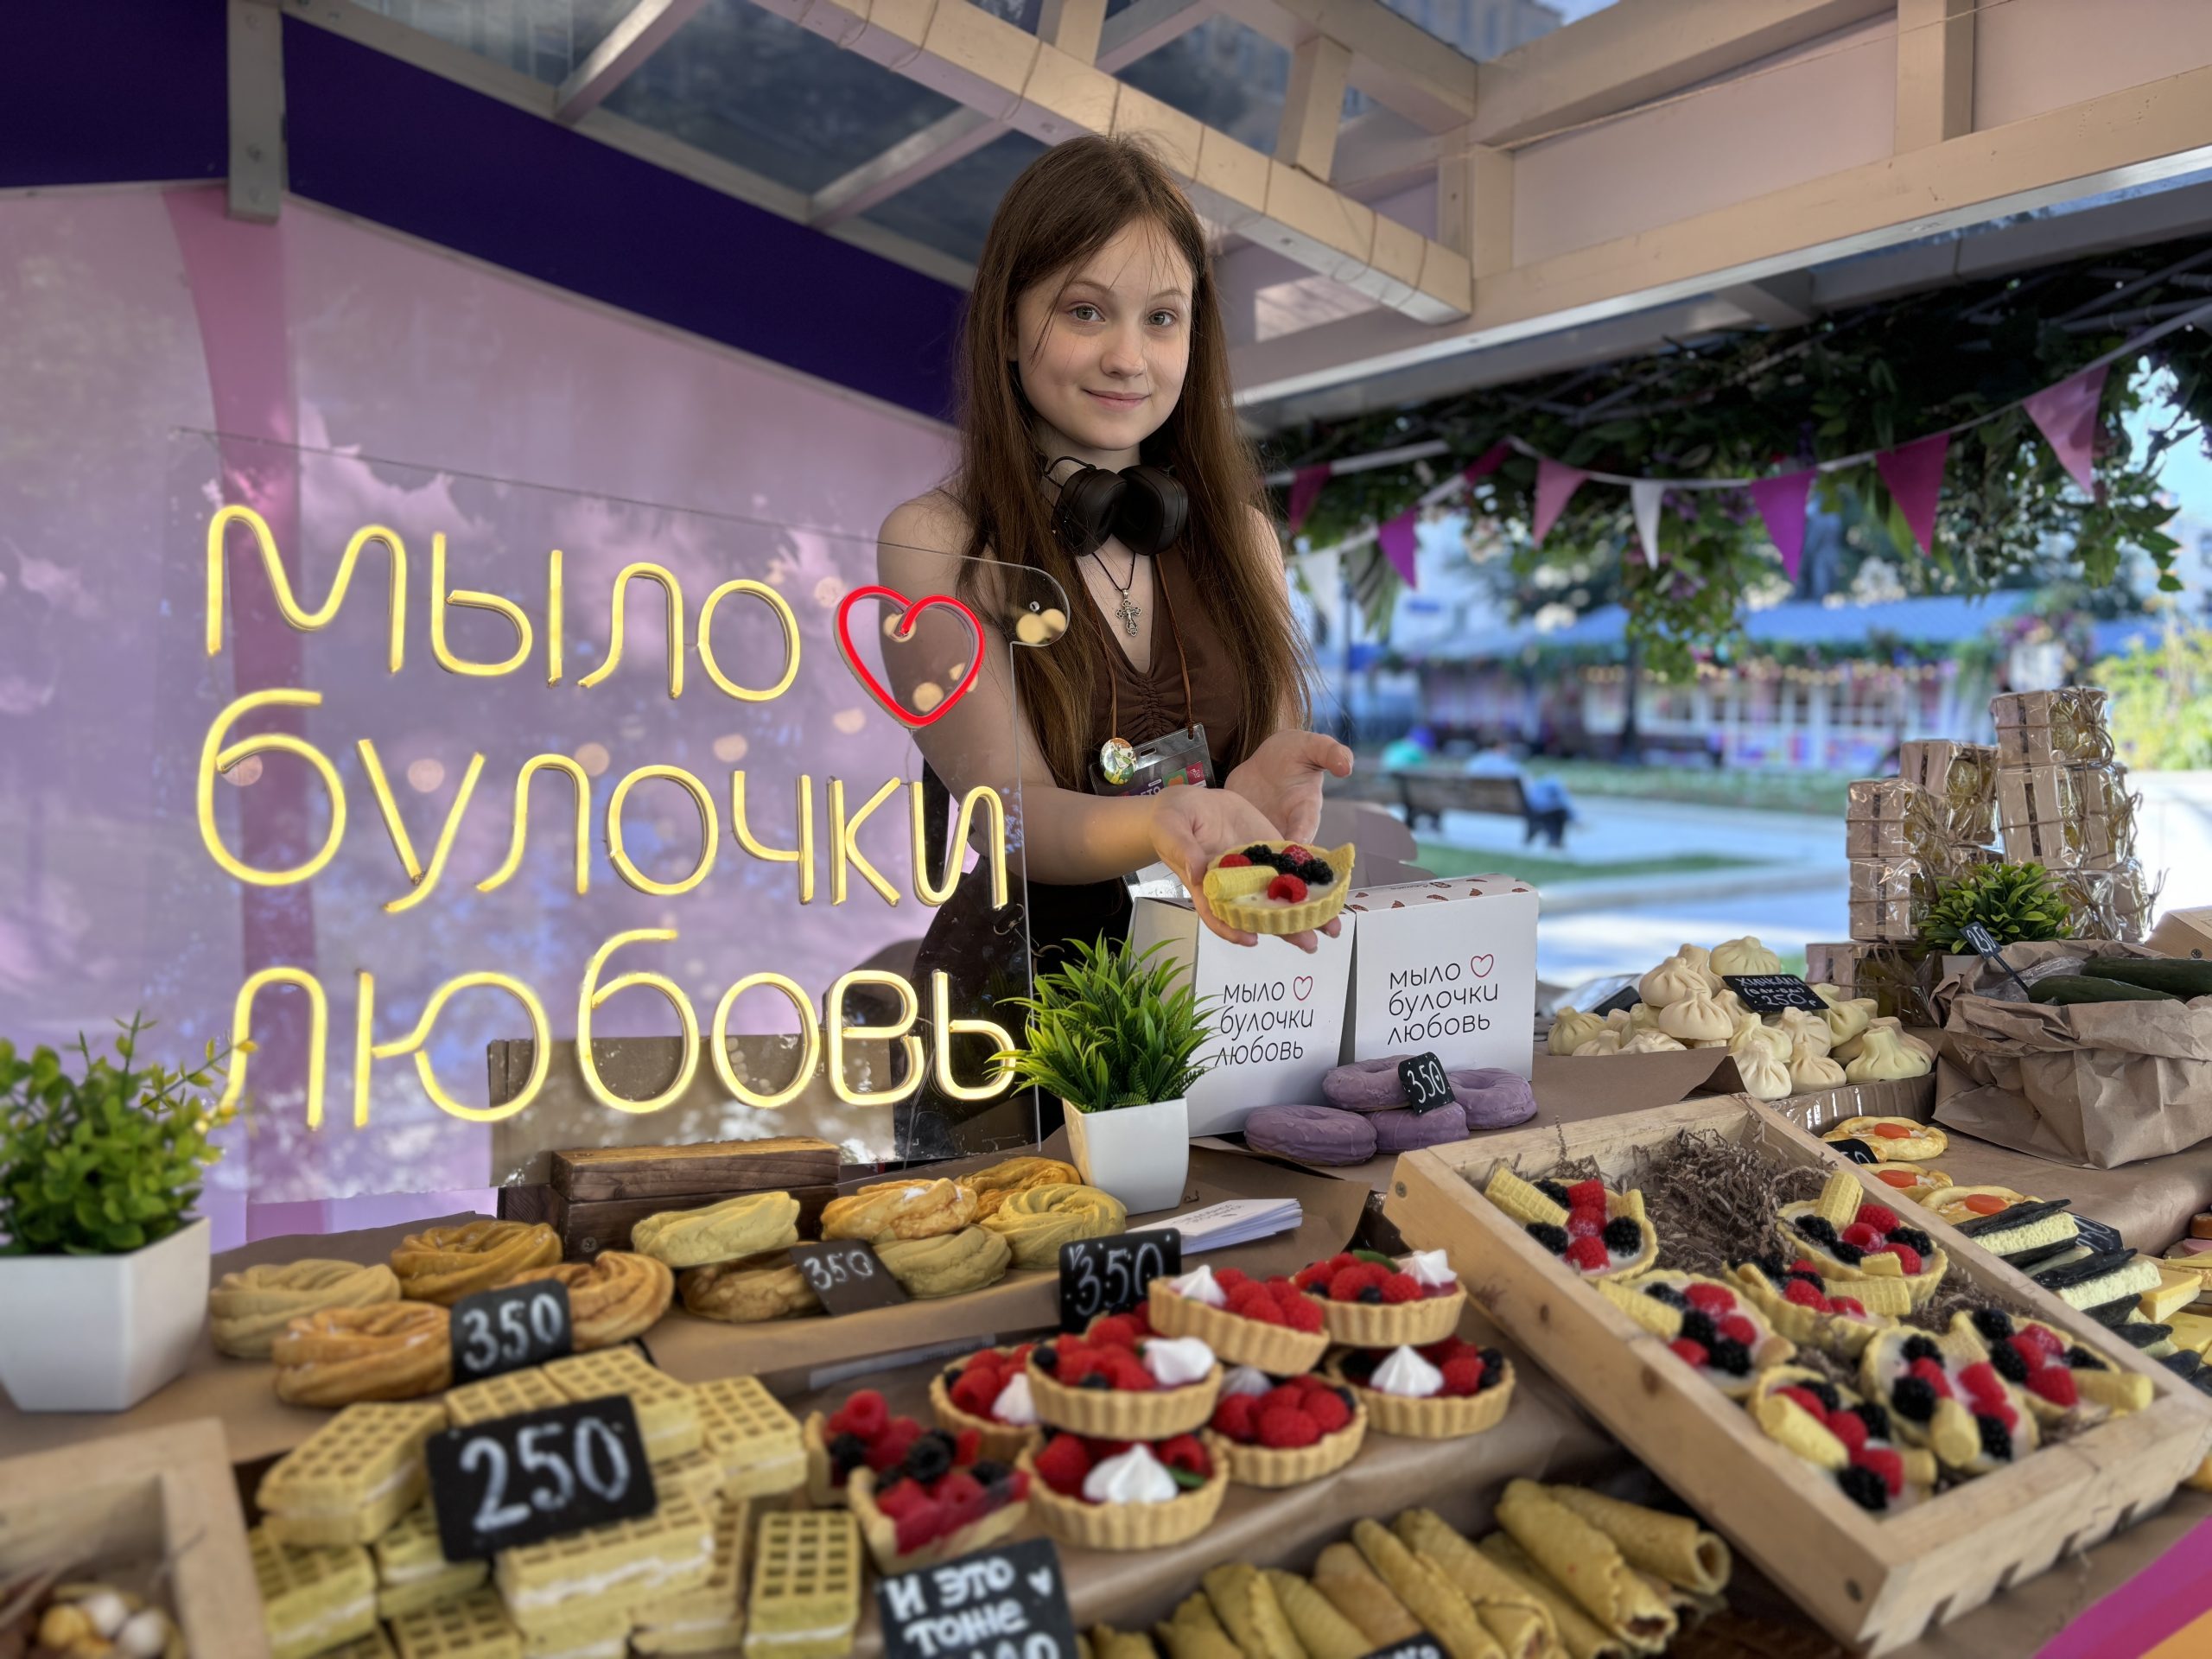 17 июля. Продавец Дарья Разумцова представила мыло ручной работы. Каждый товар похож на десерт. Главное, по ошибке его не съесть